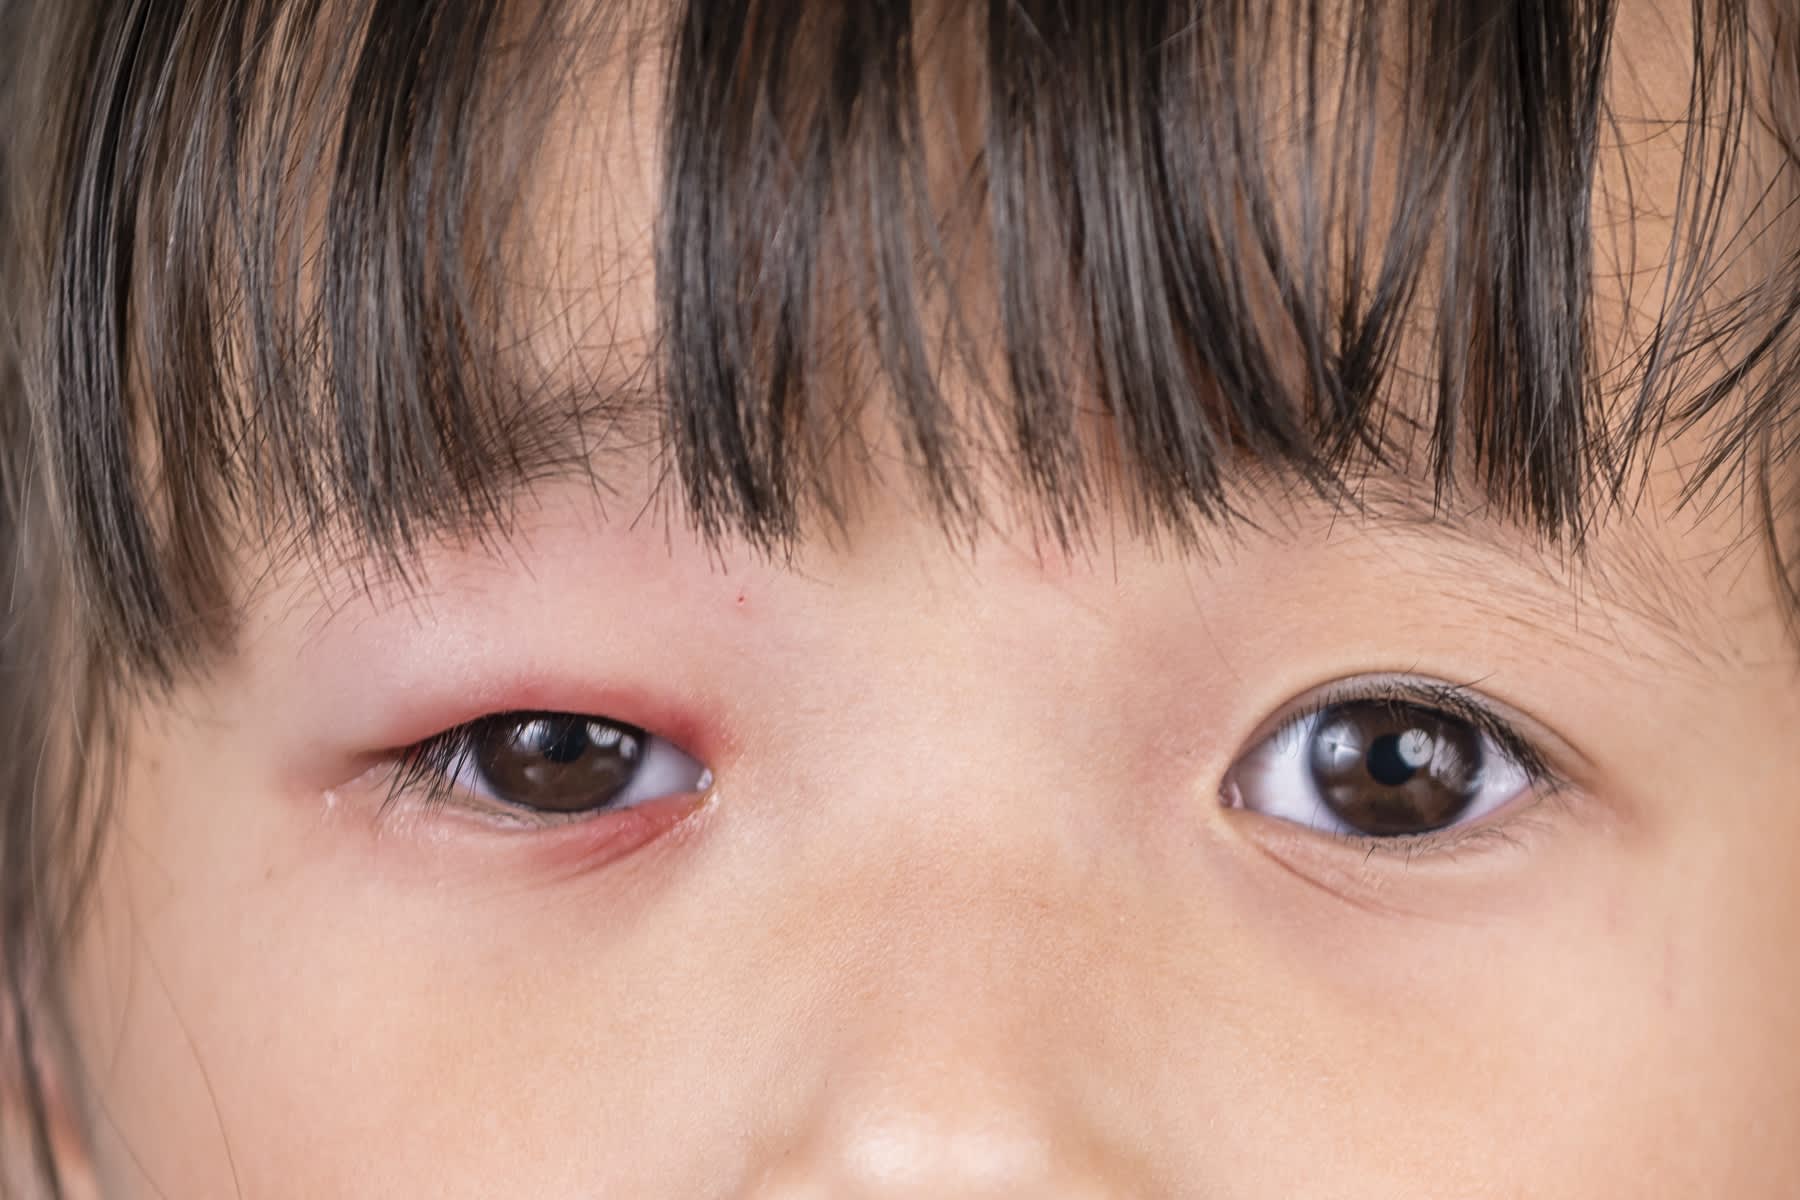 Inflammation i ögonlockskanten i det högra ögat